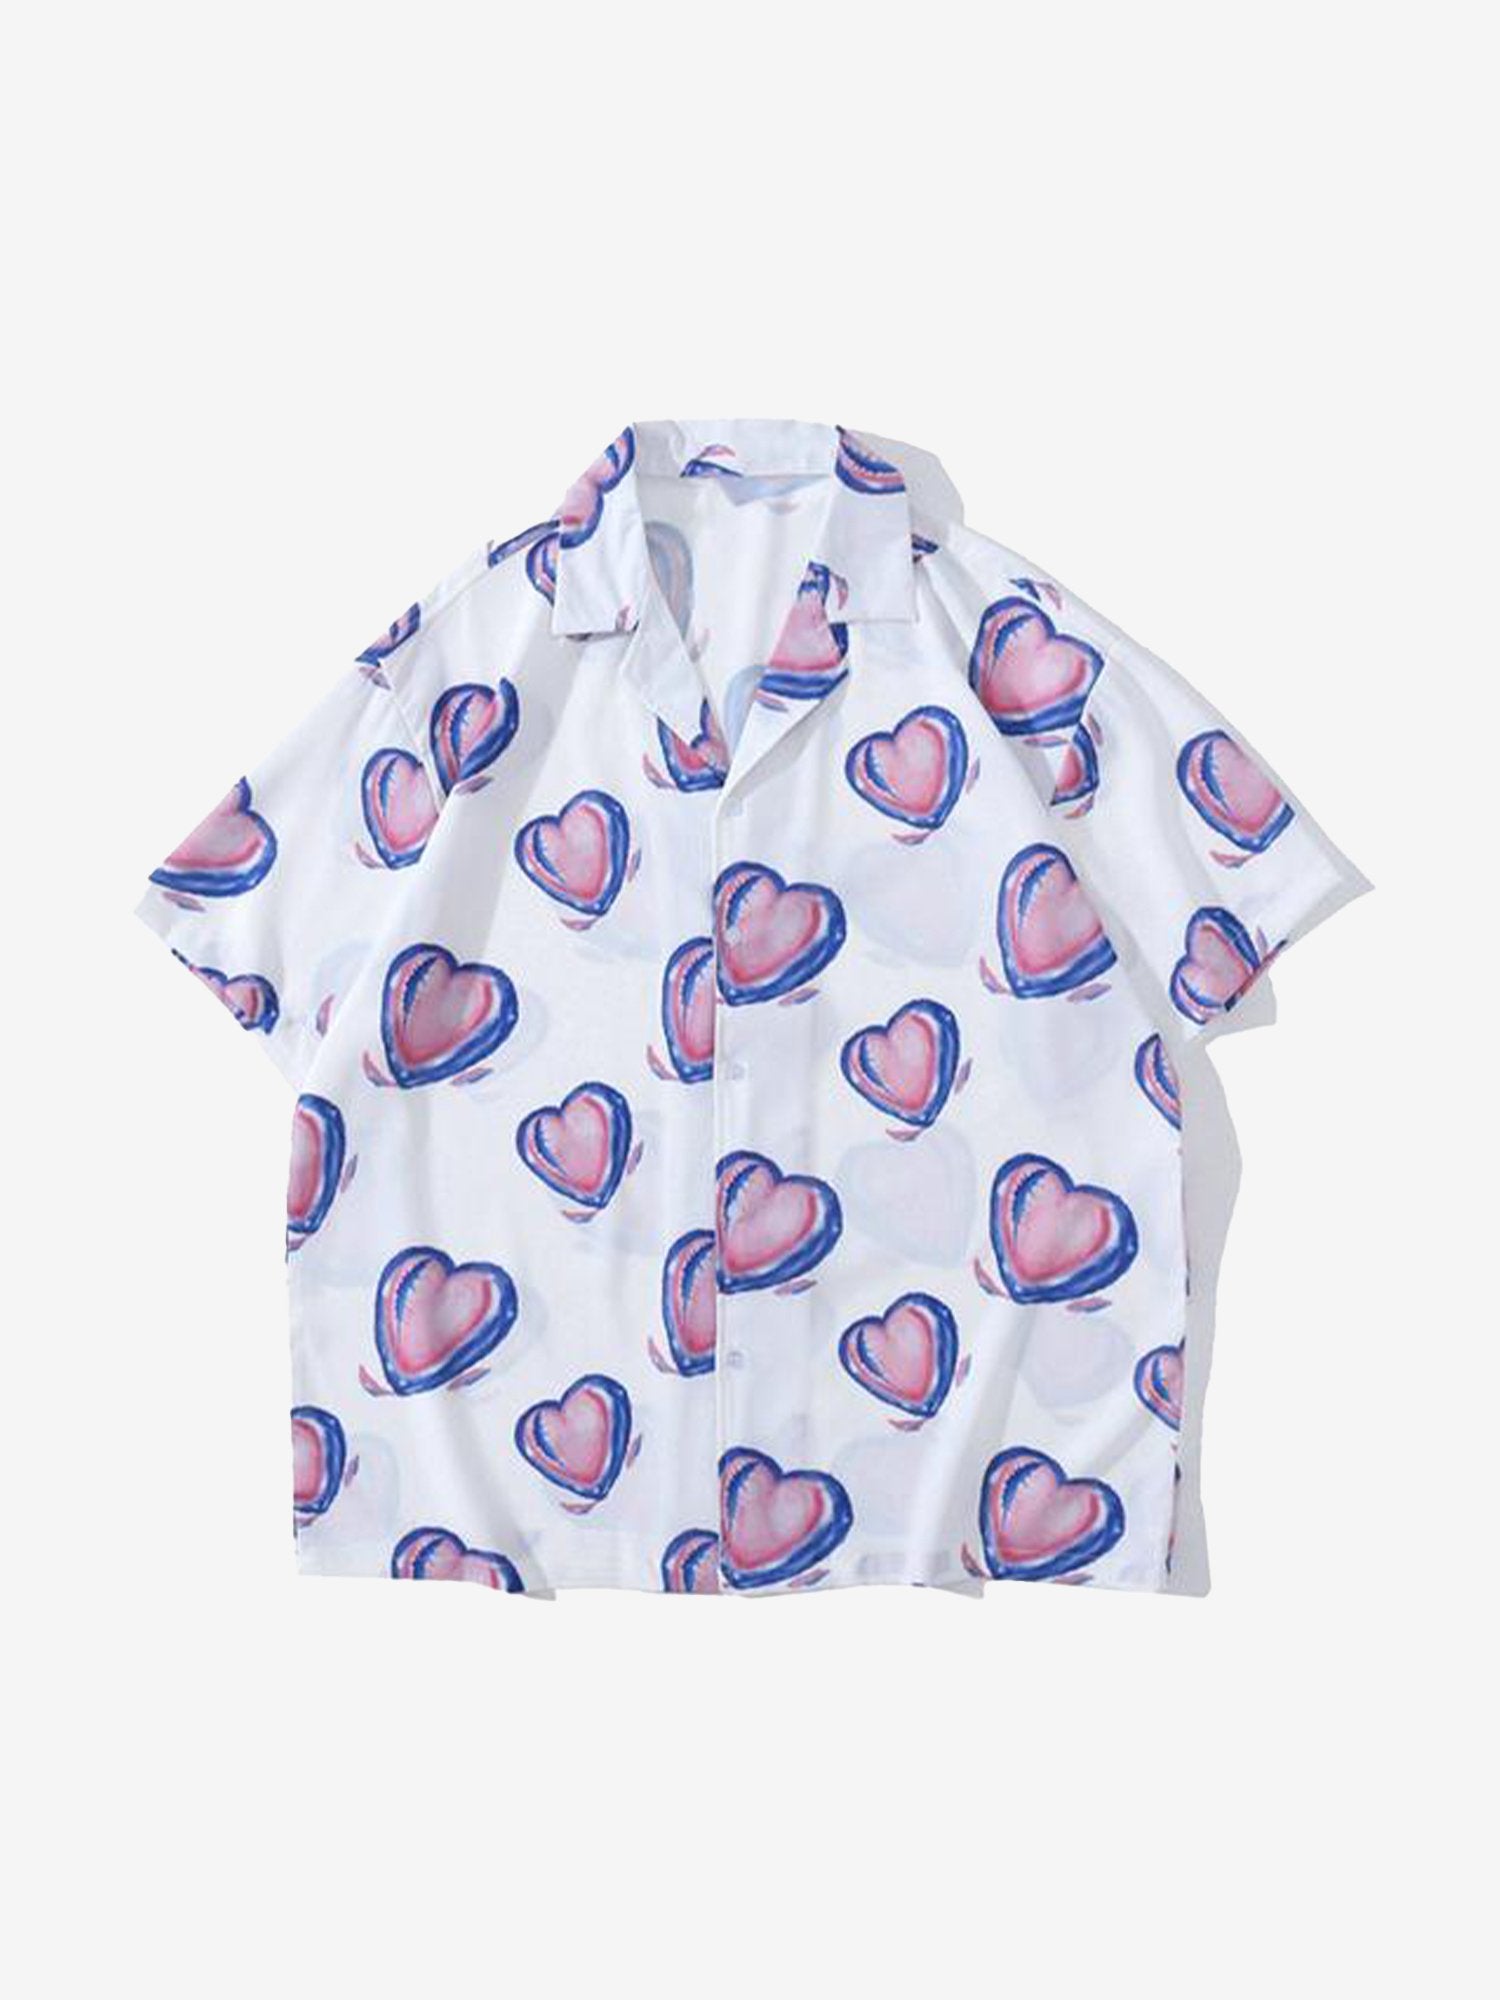 JUSTNOTAG Love Printed Short-sleeved Shirts